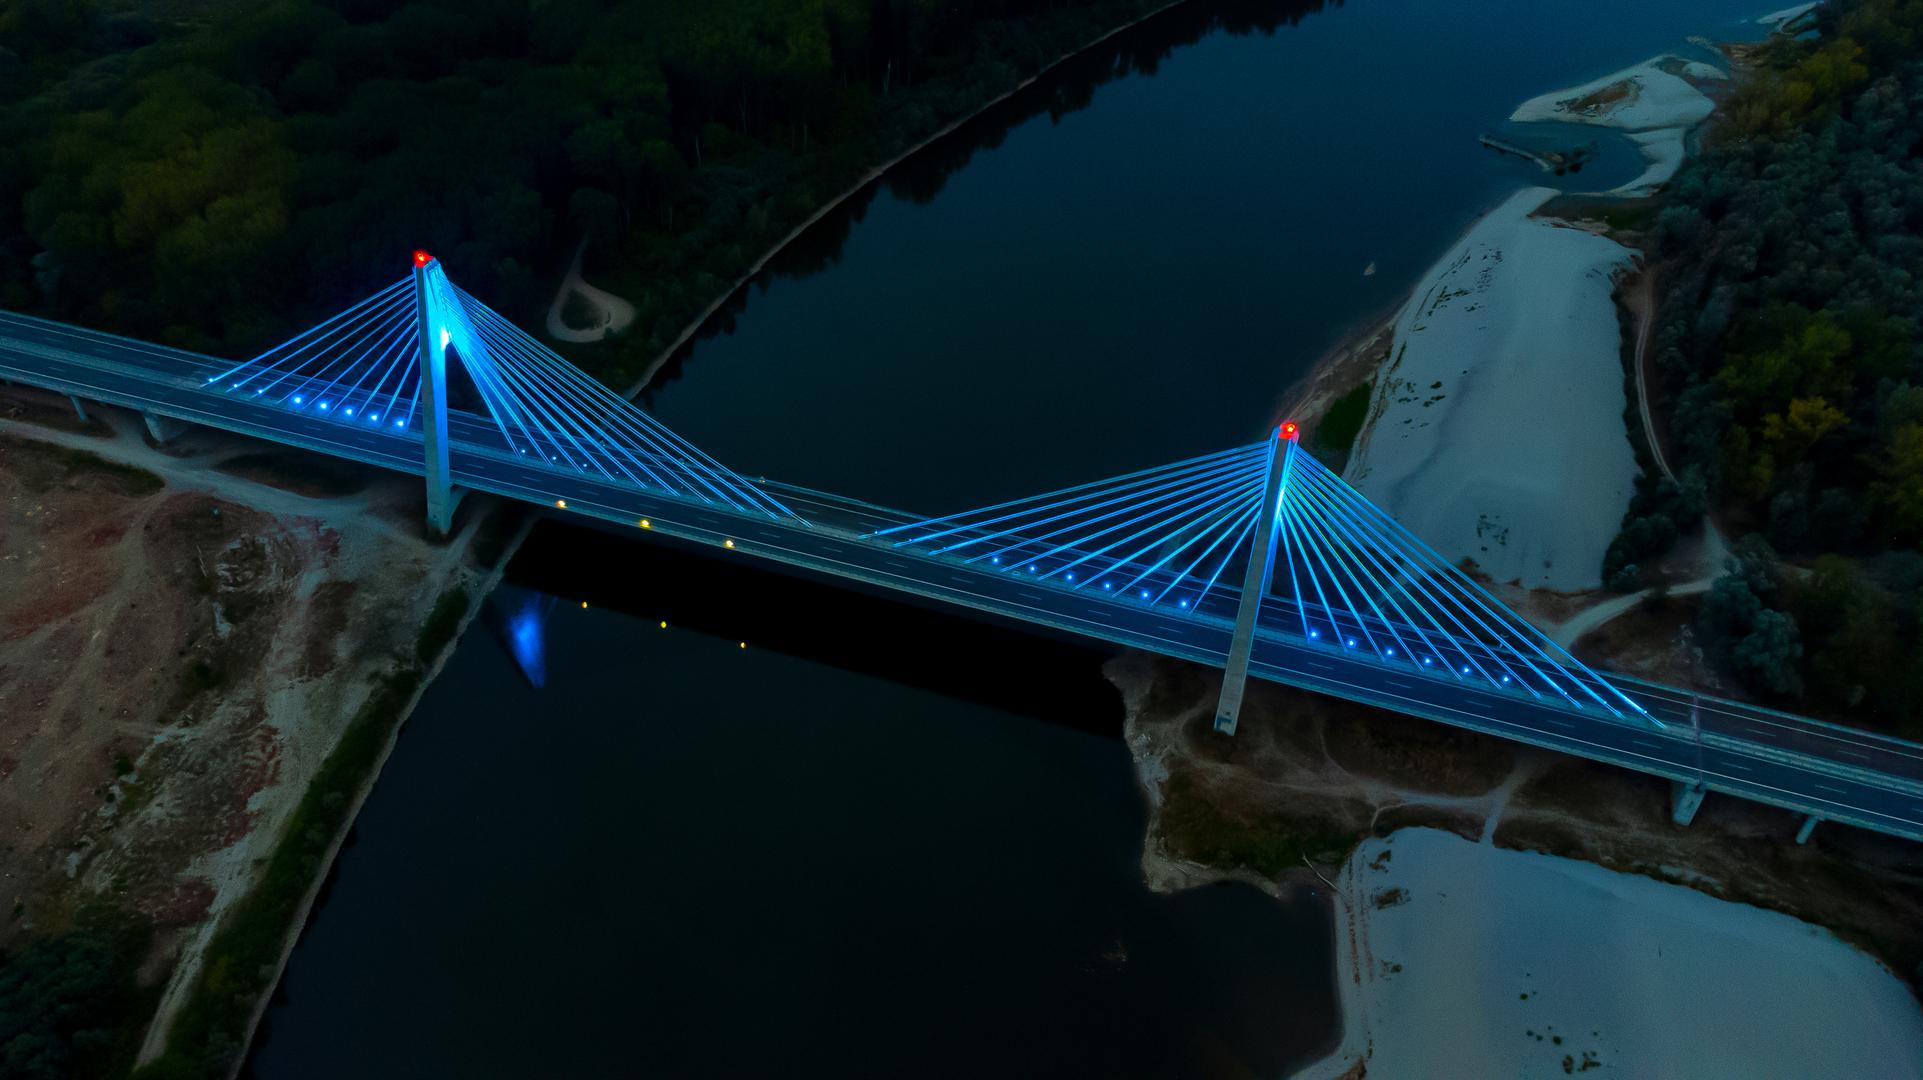 Most 3. gardijske brigade Kune - 2485 metara: Najduži je most u Hrvatskoj most preko rijeke Drave kod Petrijevaca koji je duži i od Pelješkog mosta. Most je za 81 metar duži od Pelješkoga i time je najduži most u Hrvatskoj. 